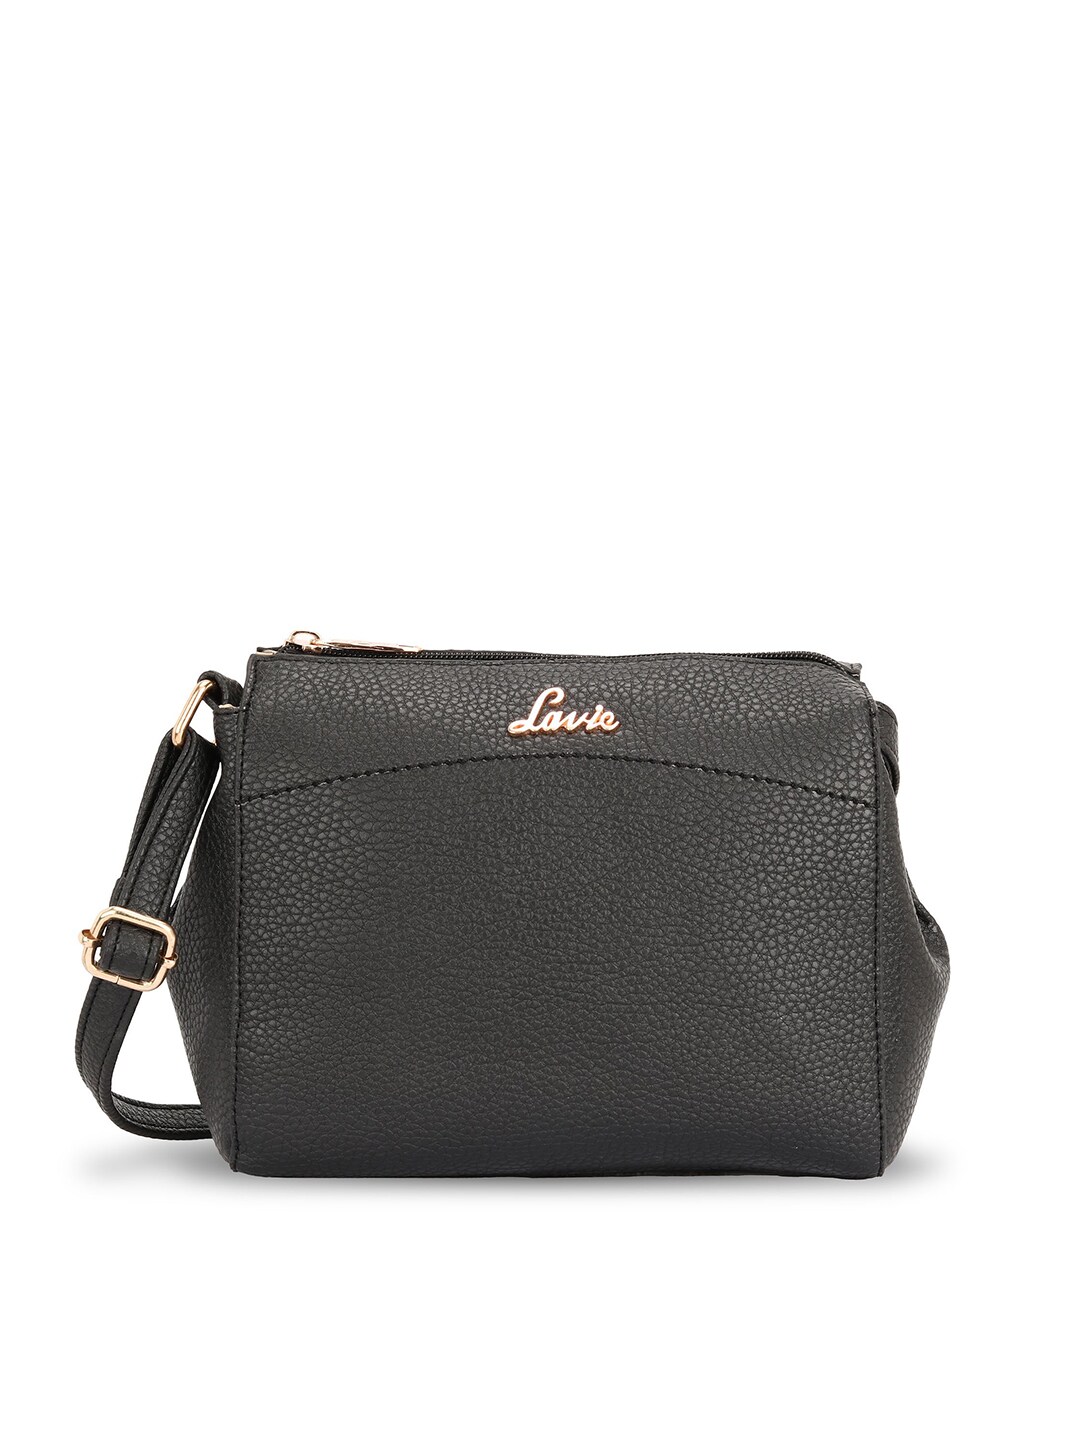 Lavie Black Solid Sling Bag Price in India